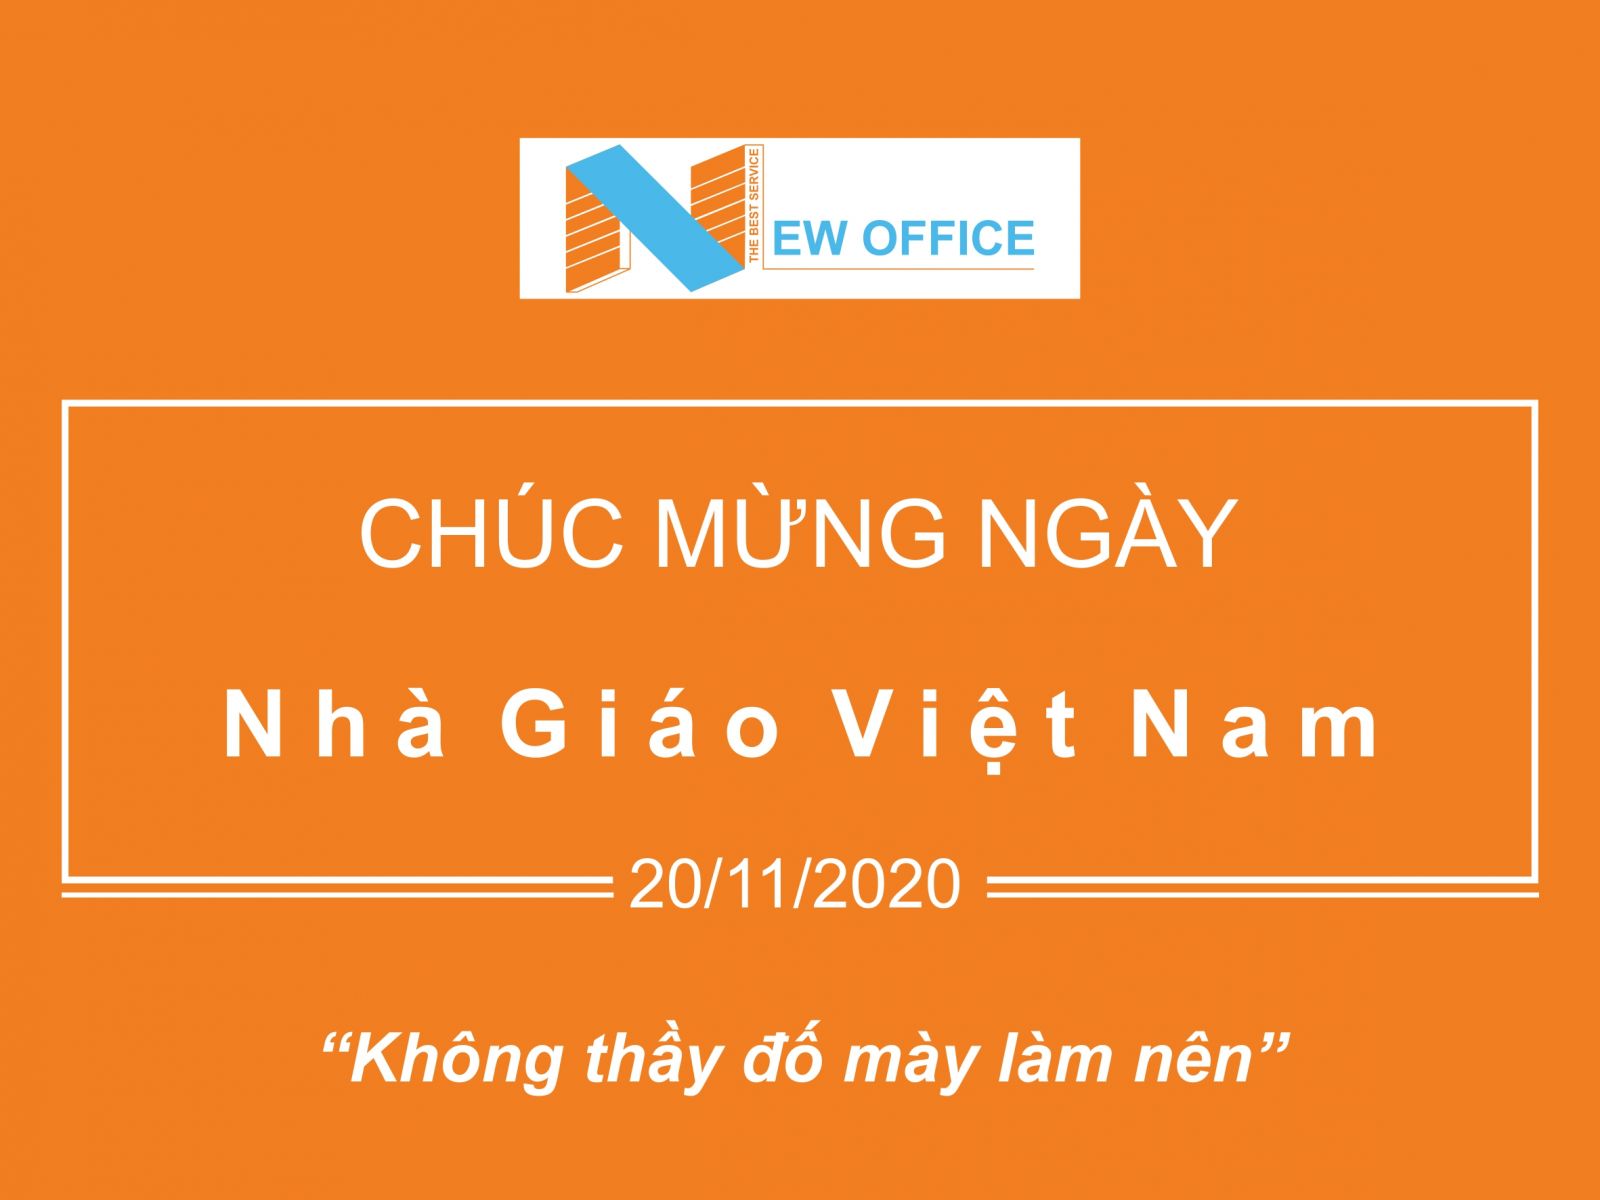 Chúc mừng ngày nhà giáo Việt Nam - New Office